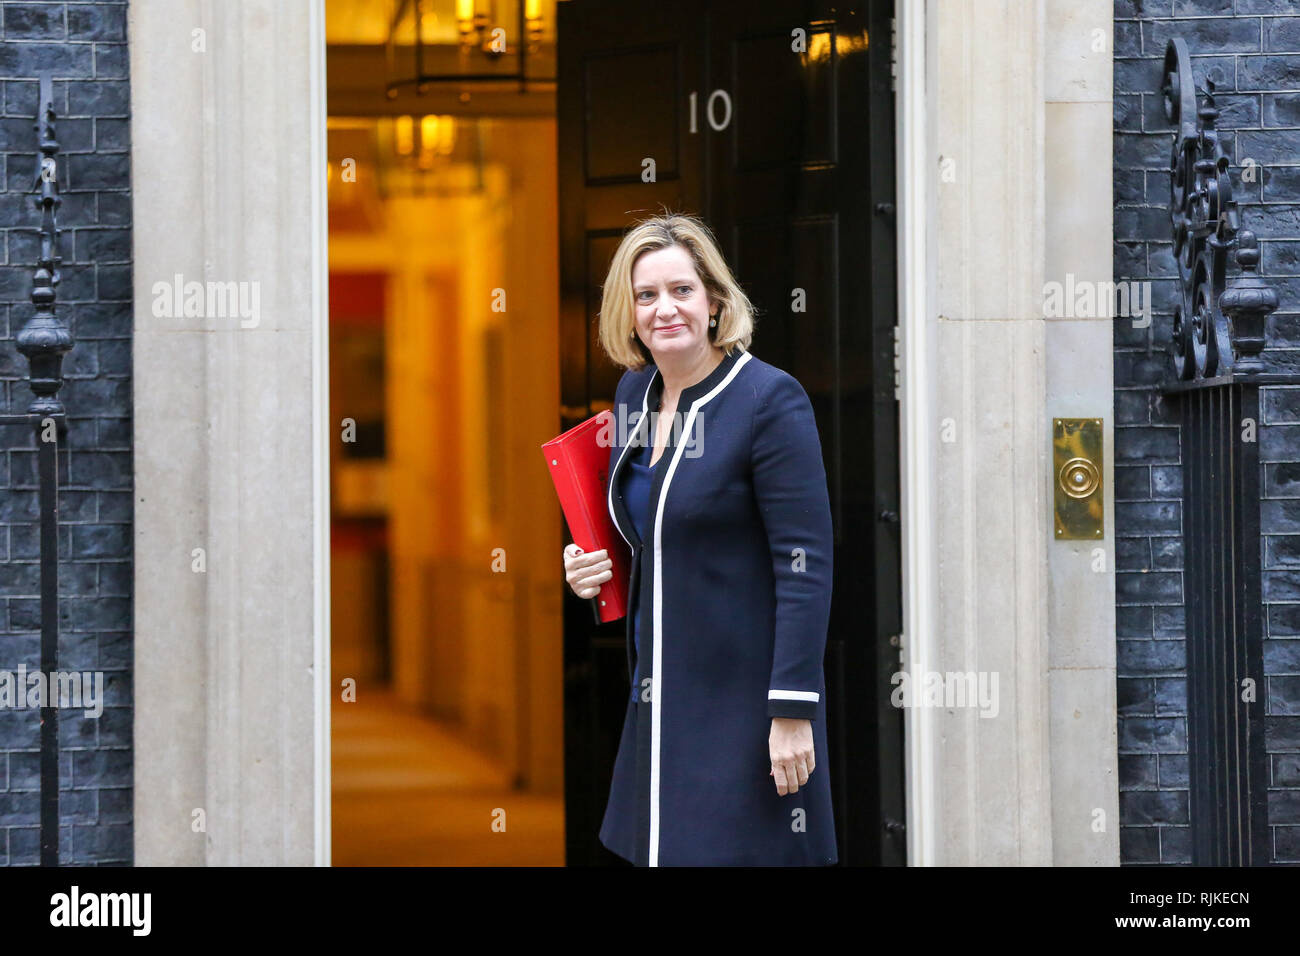 L'Amber Rudd - Secrétaire d'état du travail et des pensions vu arriver au Downing Street pour assister à la réunion hebdomadaire du Cabinet. Banque D'Images